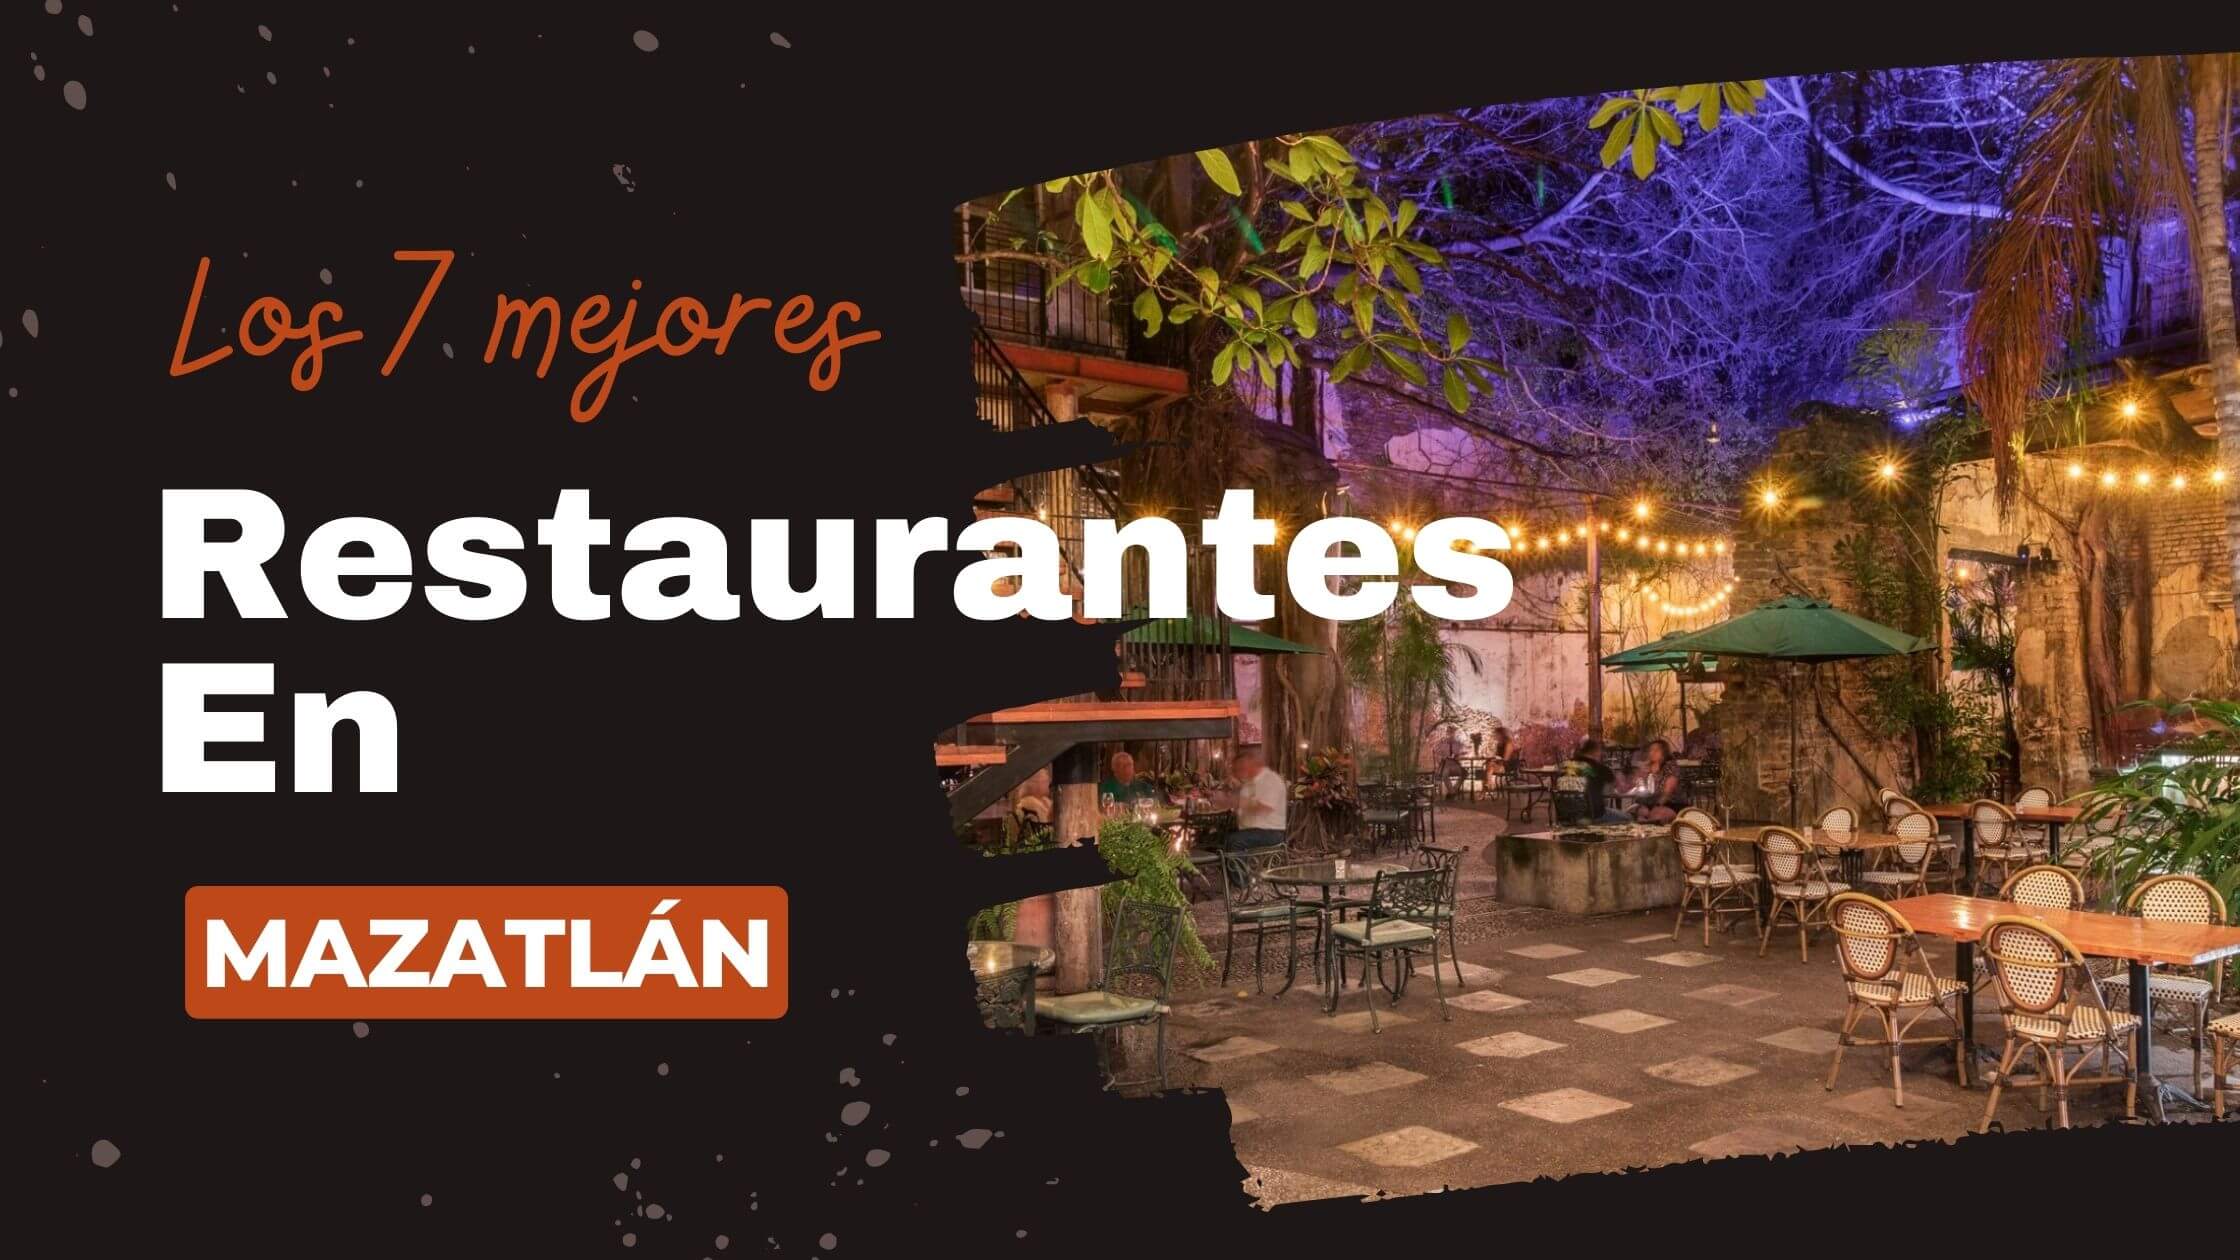 Restaurantes En Mazatlan Los 7 mejores 9 1